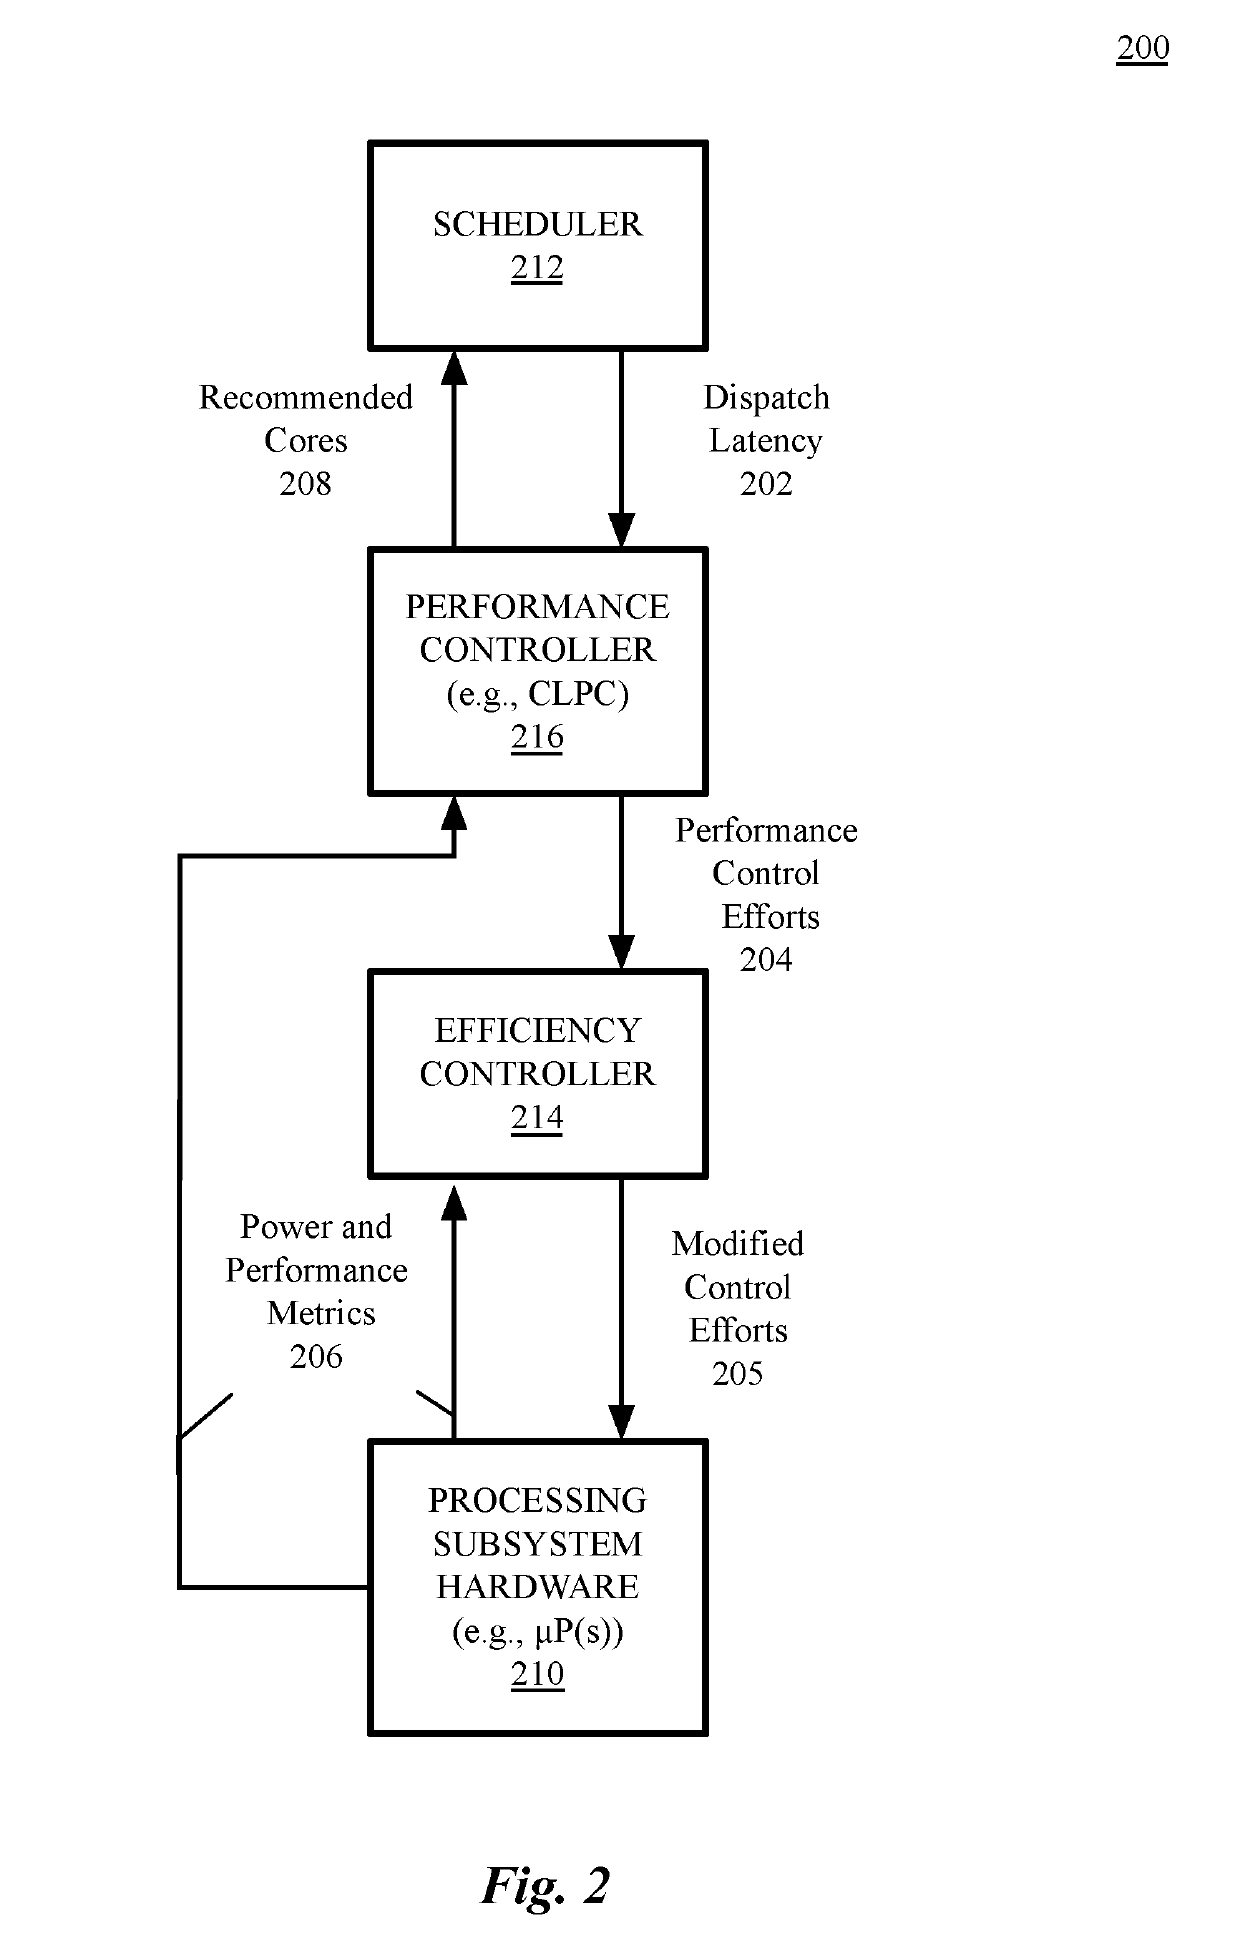 Processor unit efficiency control